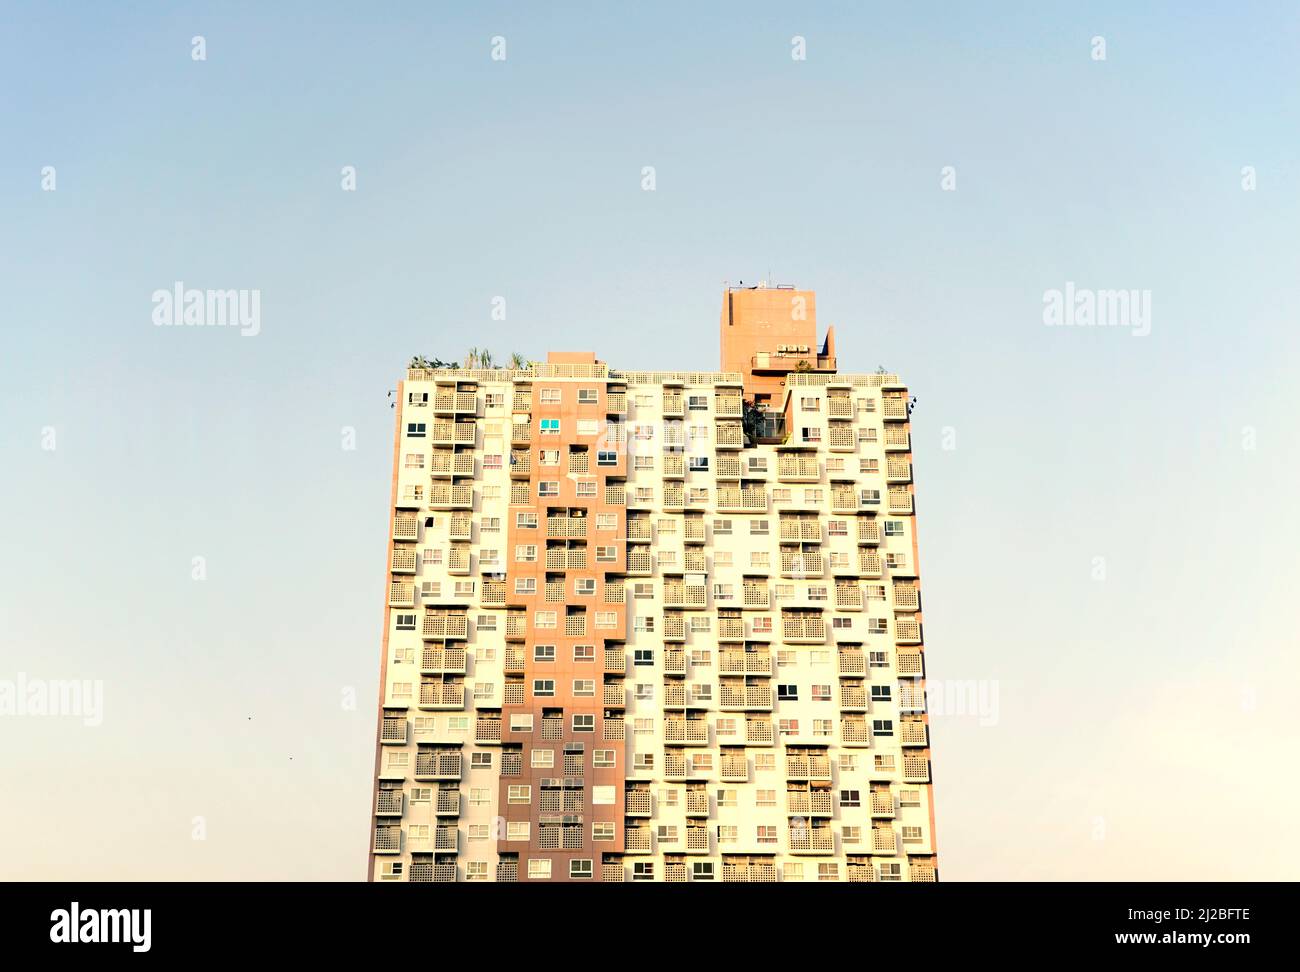 Wunderschöne, kosmopolitische Wohnanlage, Eigentumswohnung oder moderne, flache Gebäudestruktur mit pastellblauer Skyline. Stockfoto